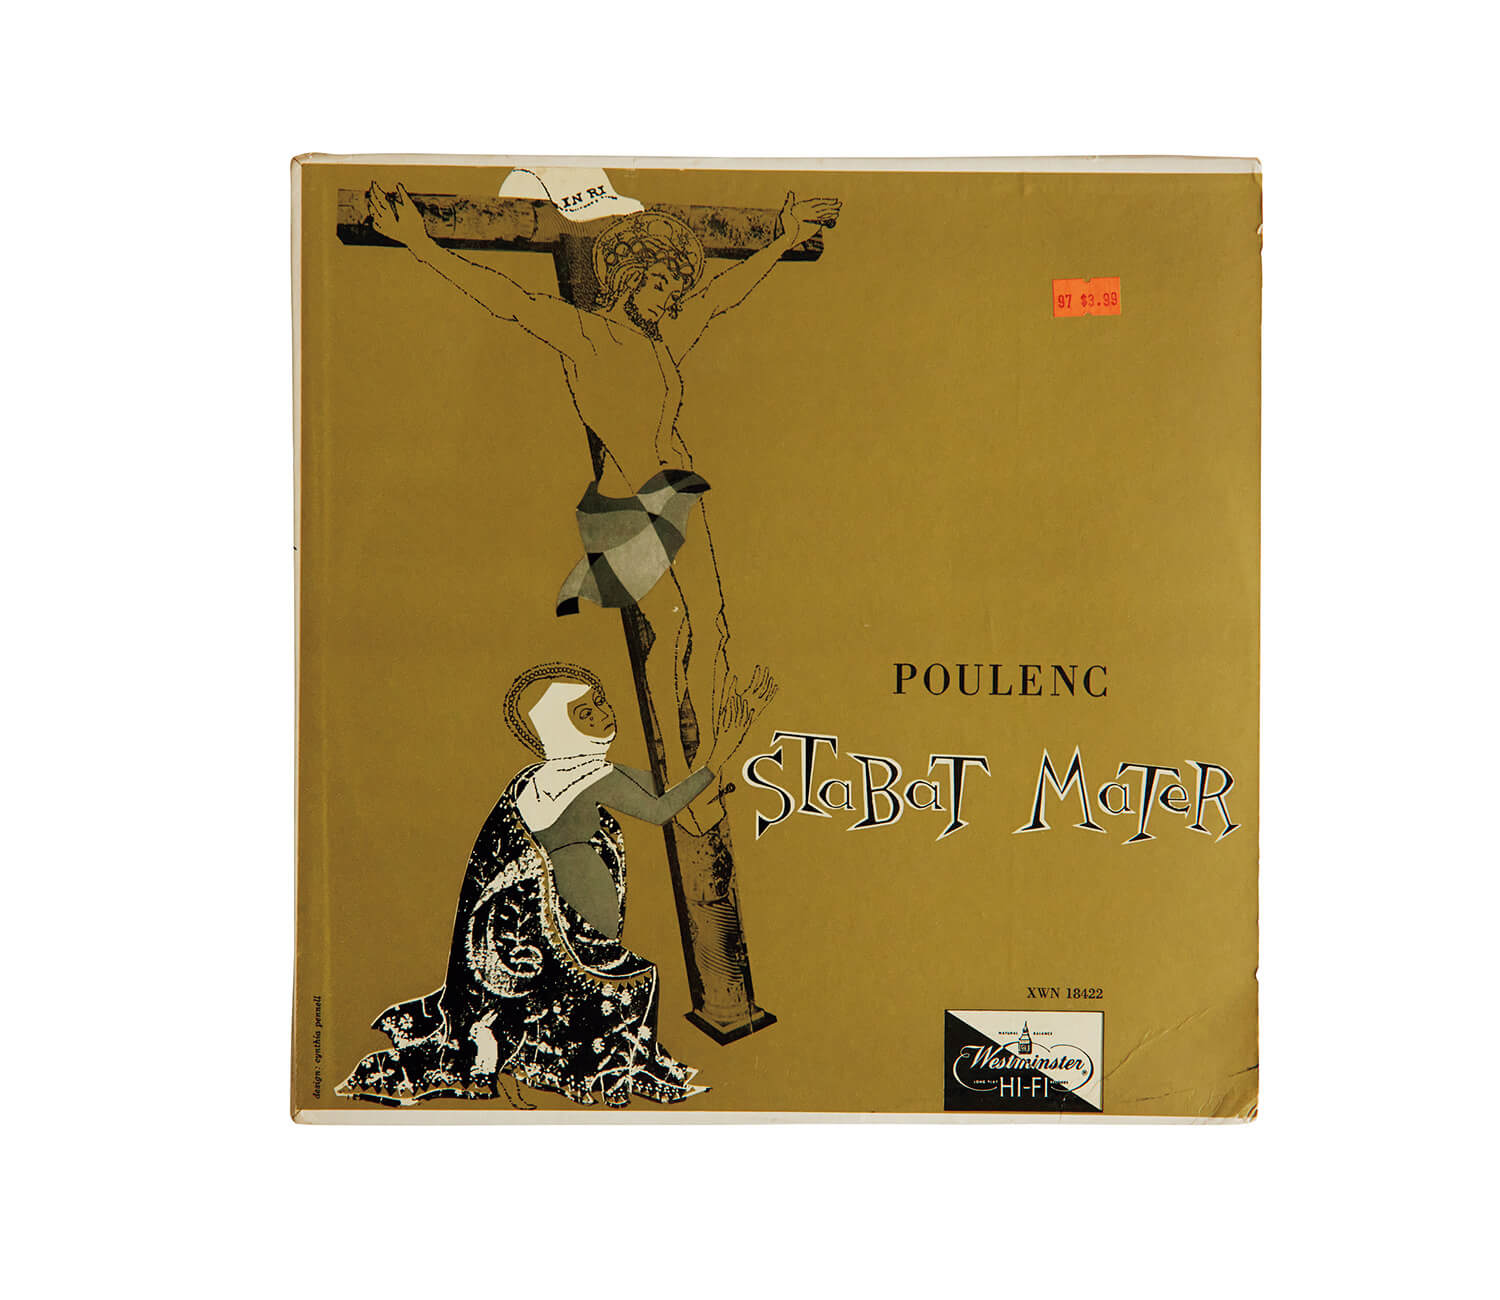 ジャクリーヌ・ブルメールが演奏した、プーランク「スターバト・マーテル」レコードジャケット